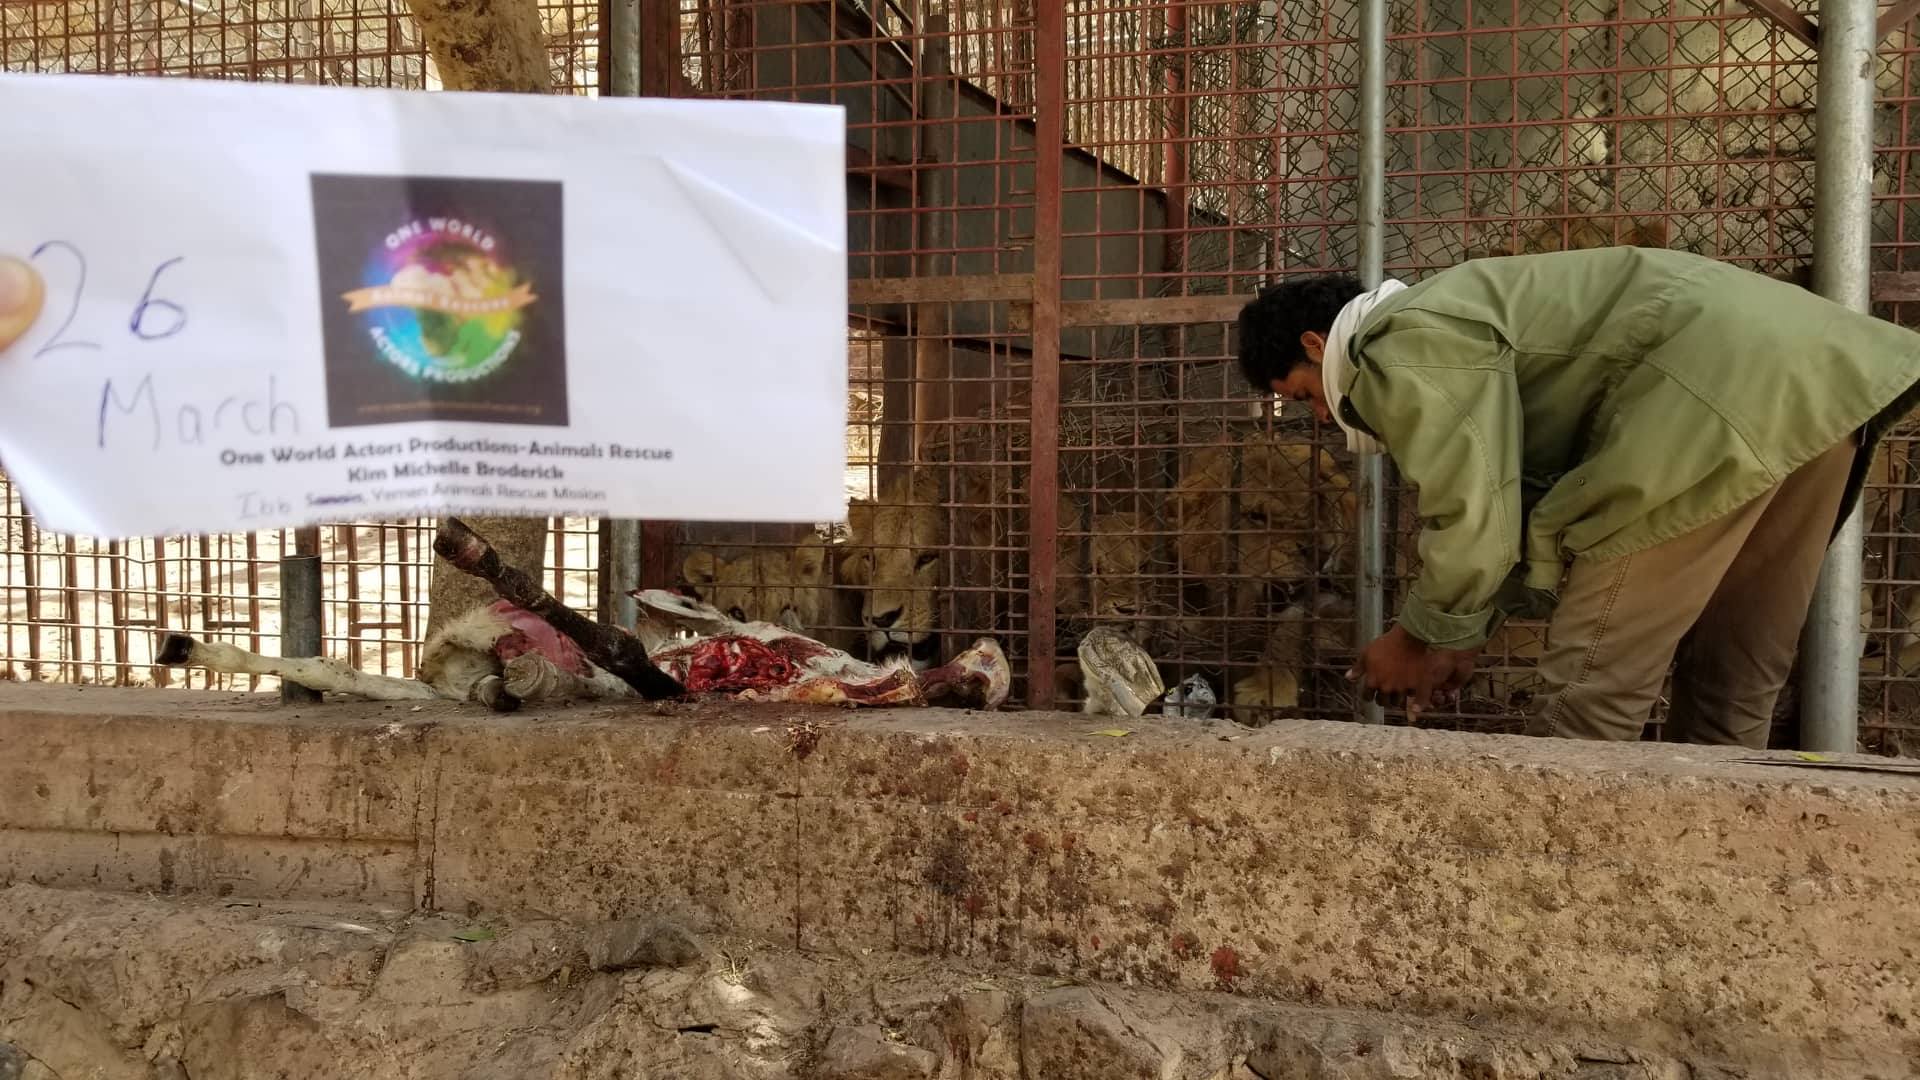 ibb zoo feed OWAPAR providing  26 march 2019 with abdulrazak yemen rescue Hisham visit delivery 11 donkeys.jpg